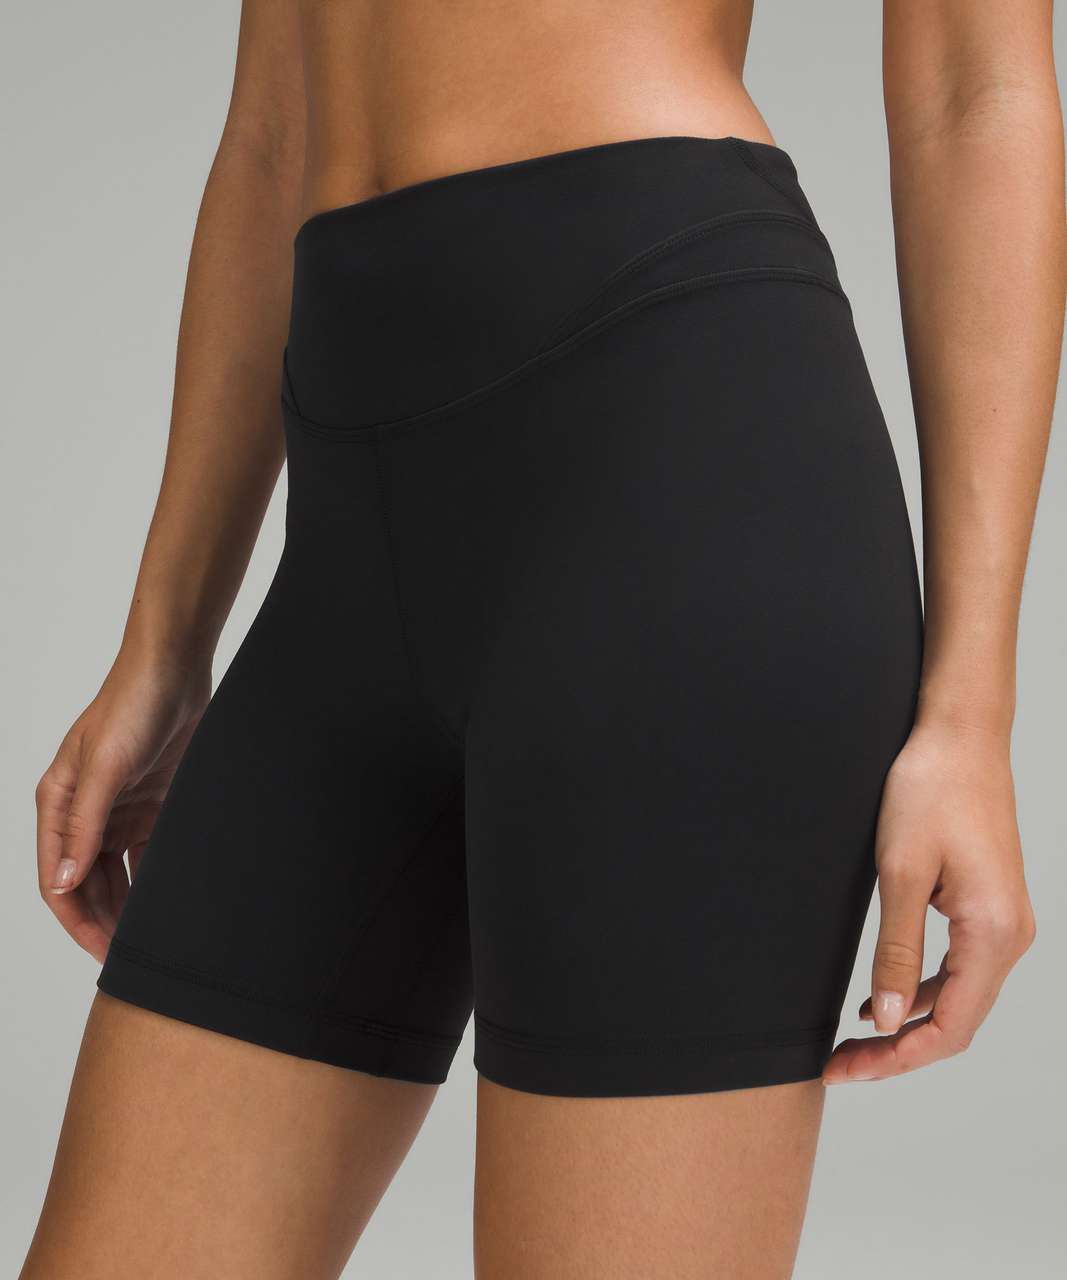 Shorts Lululemon Black size 6 US in Synthetic - 39720219